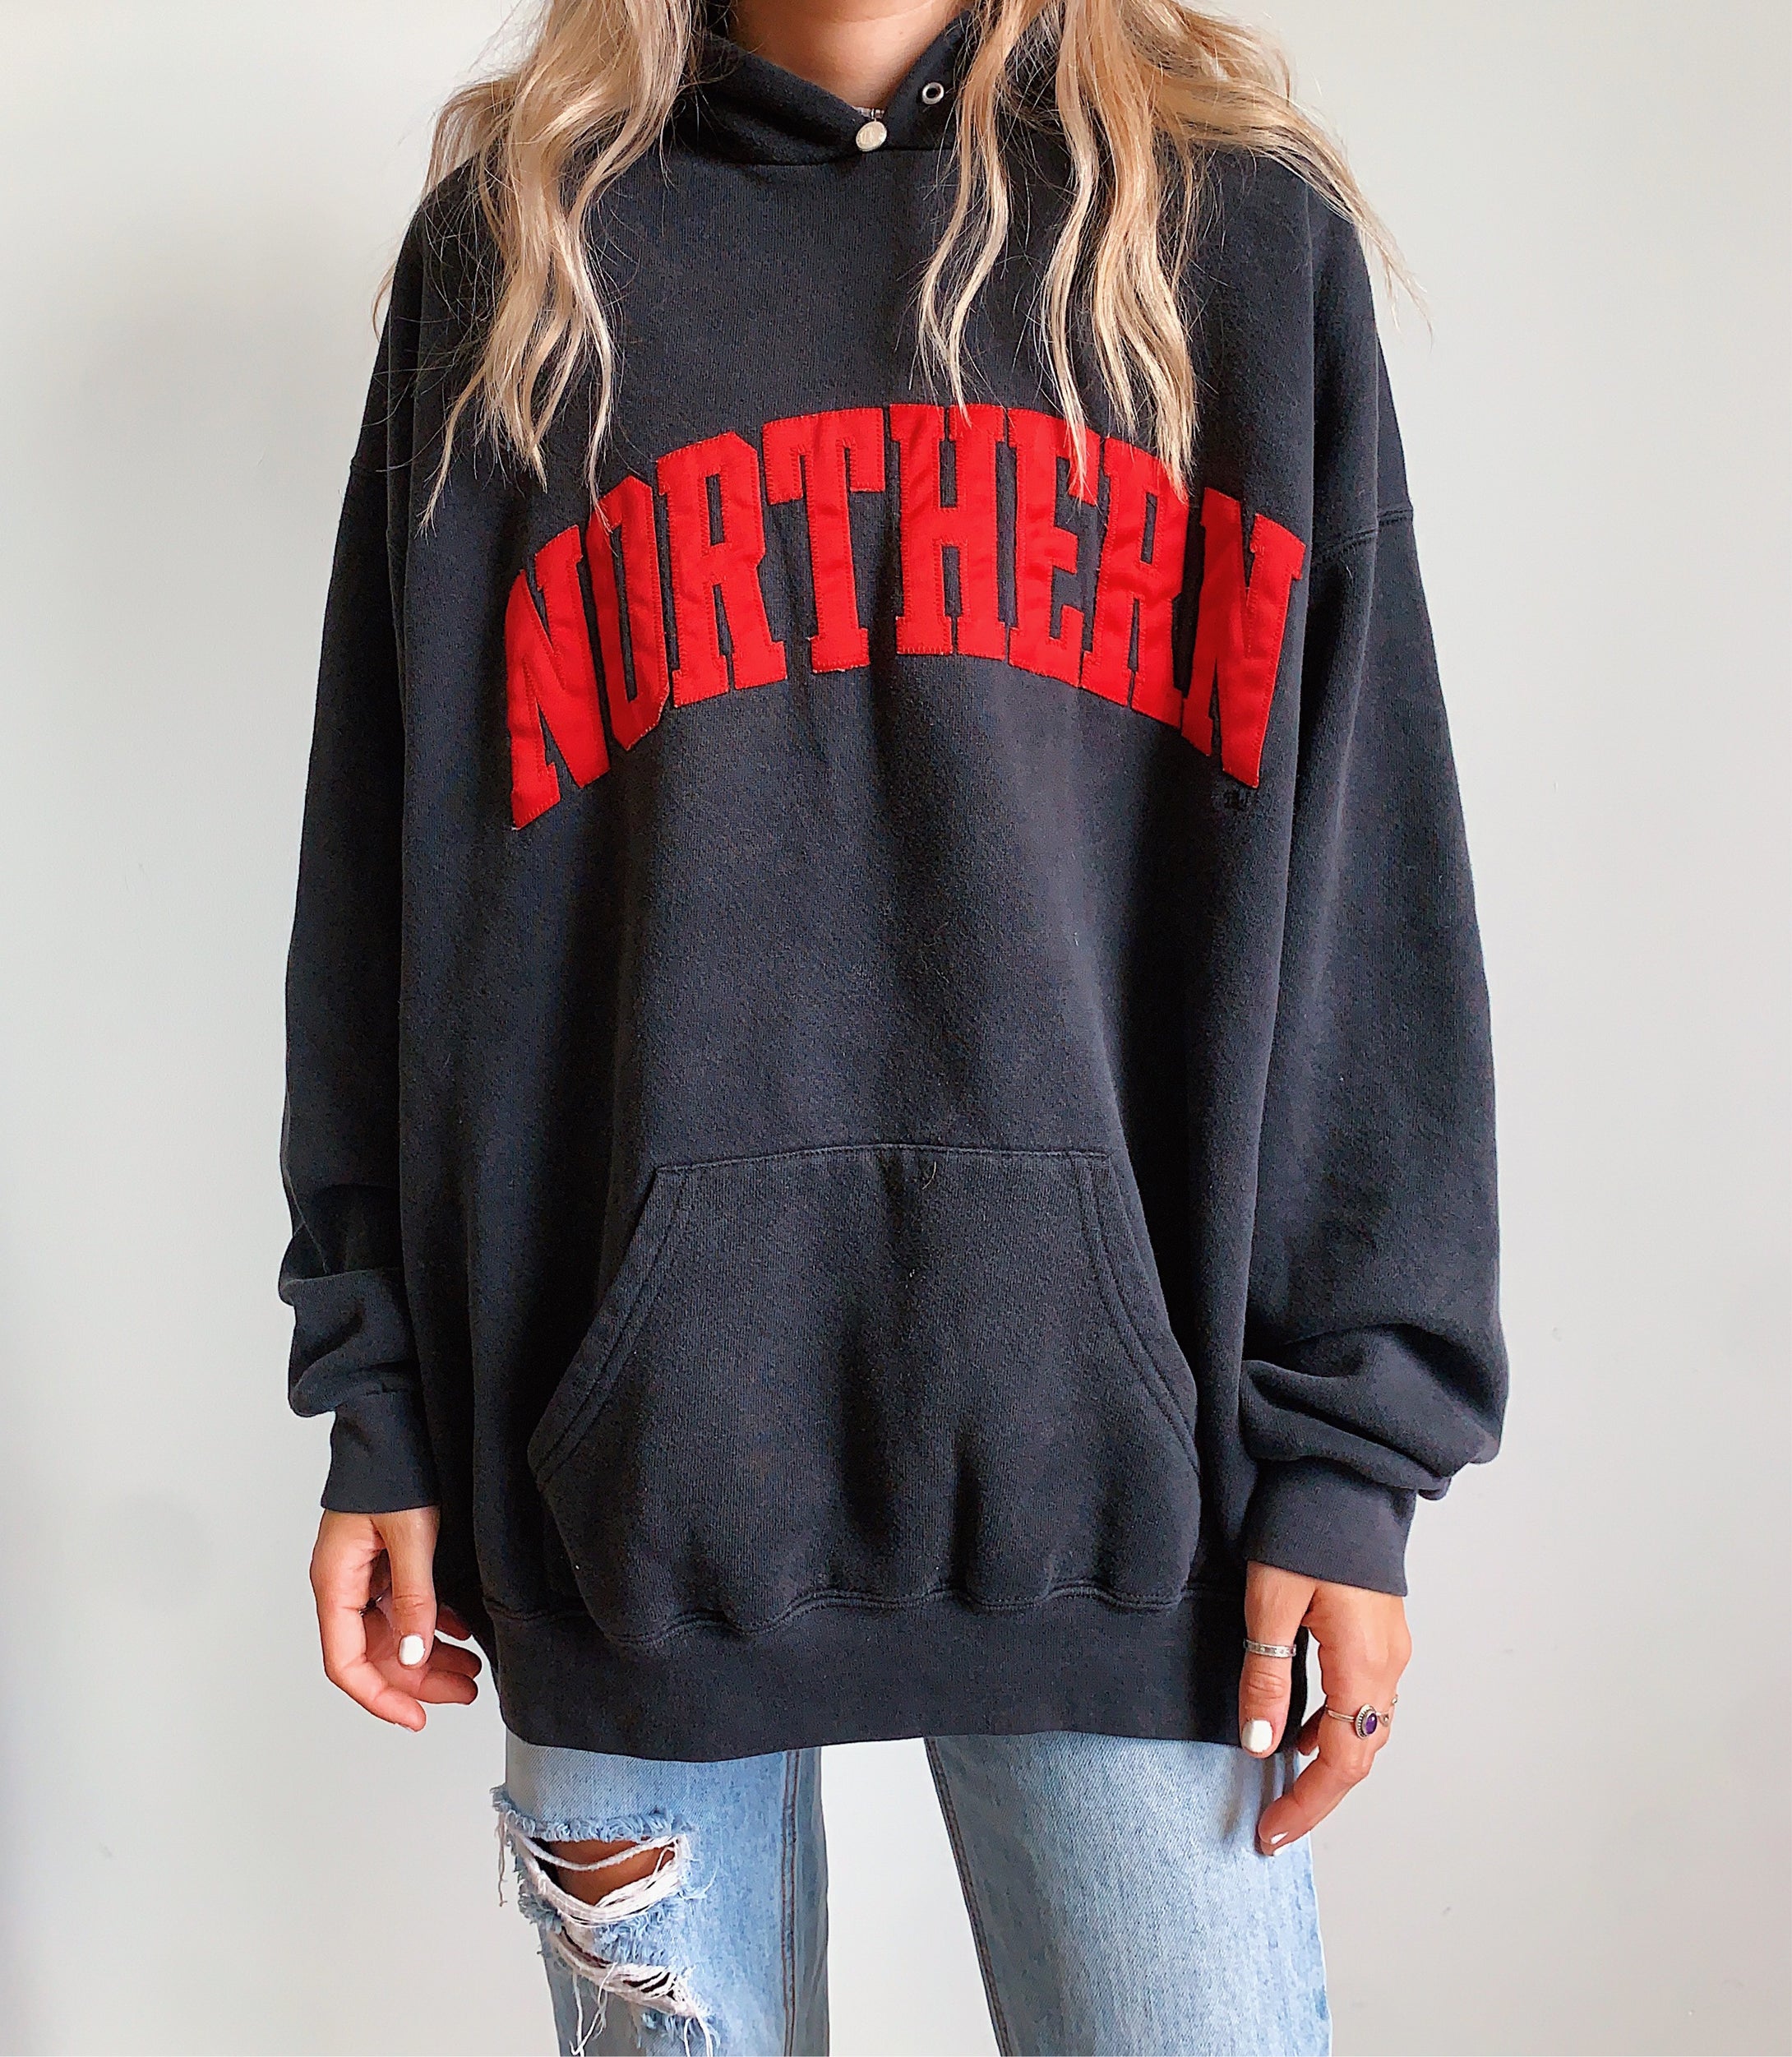 northern hoodie